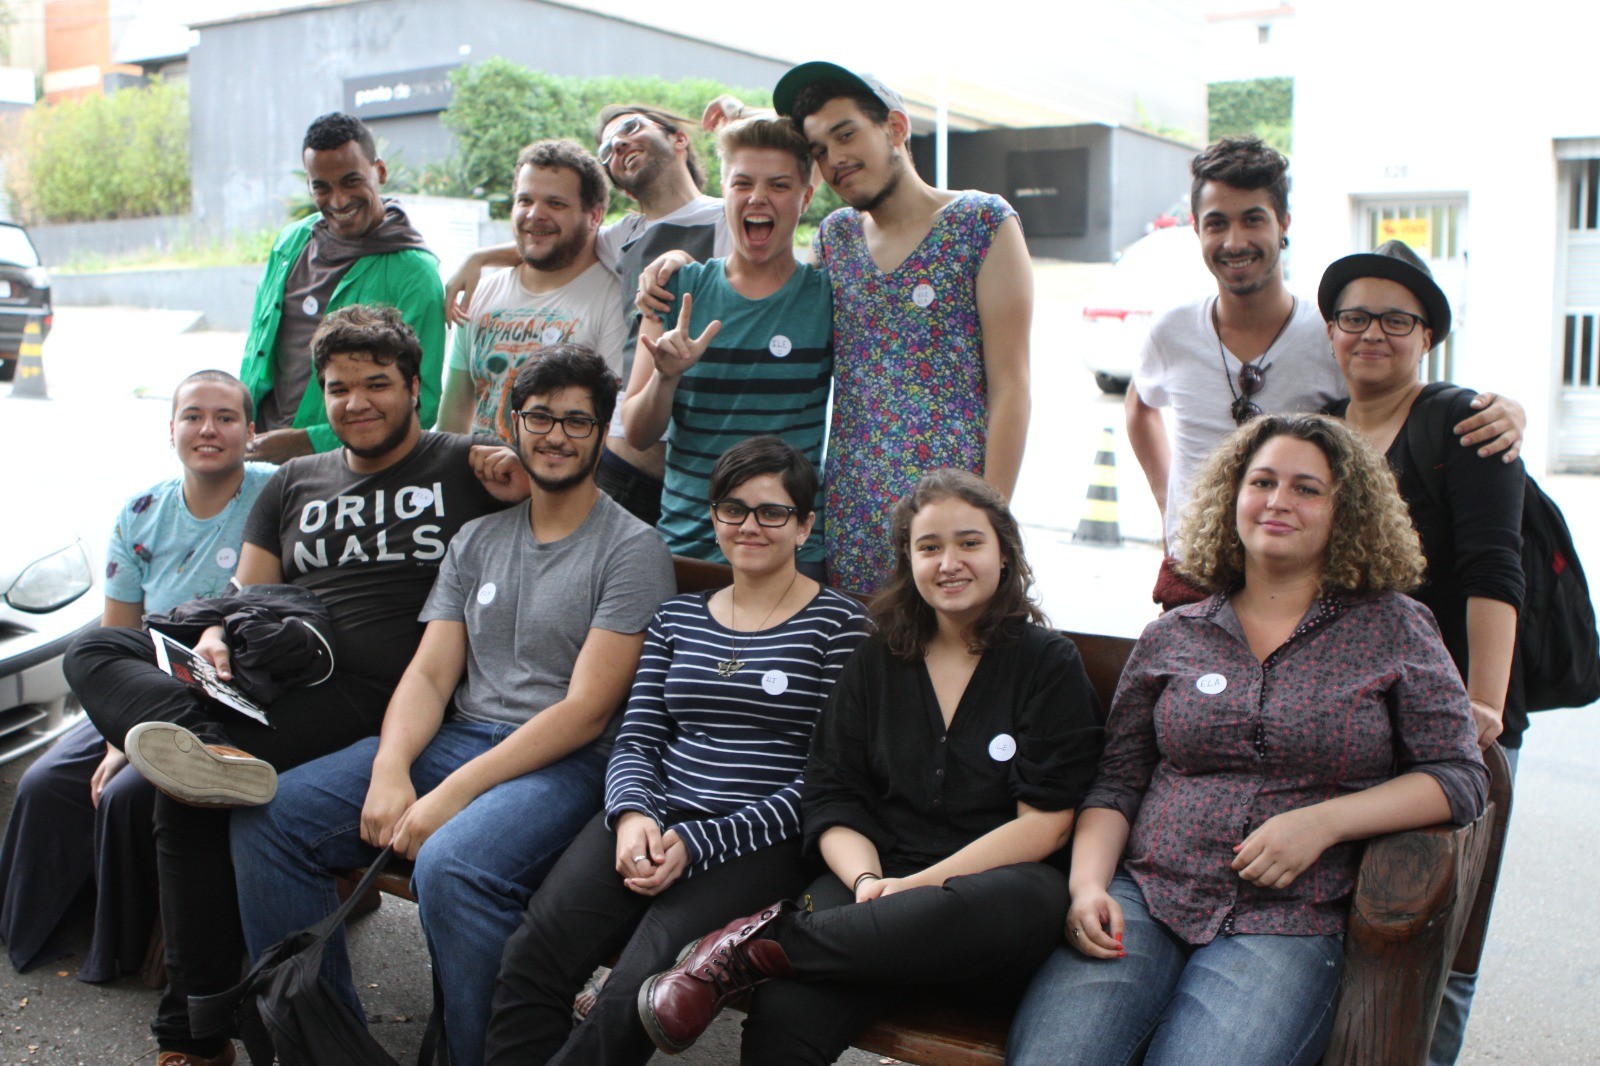 Registro do primeiro Workshop de linguagem neutra no Brasil, promovido pelo instituto [SSEX BBOX], em 2014  (Foto: Arquivo Pessoal)